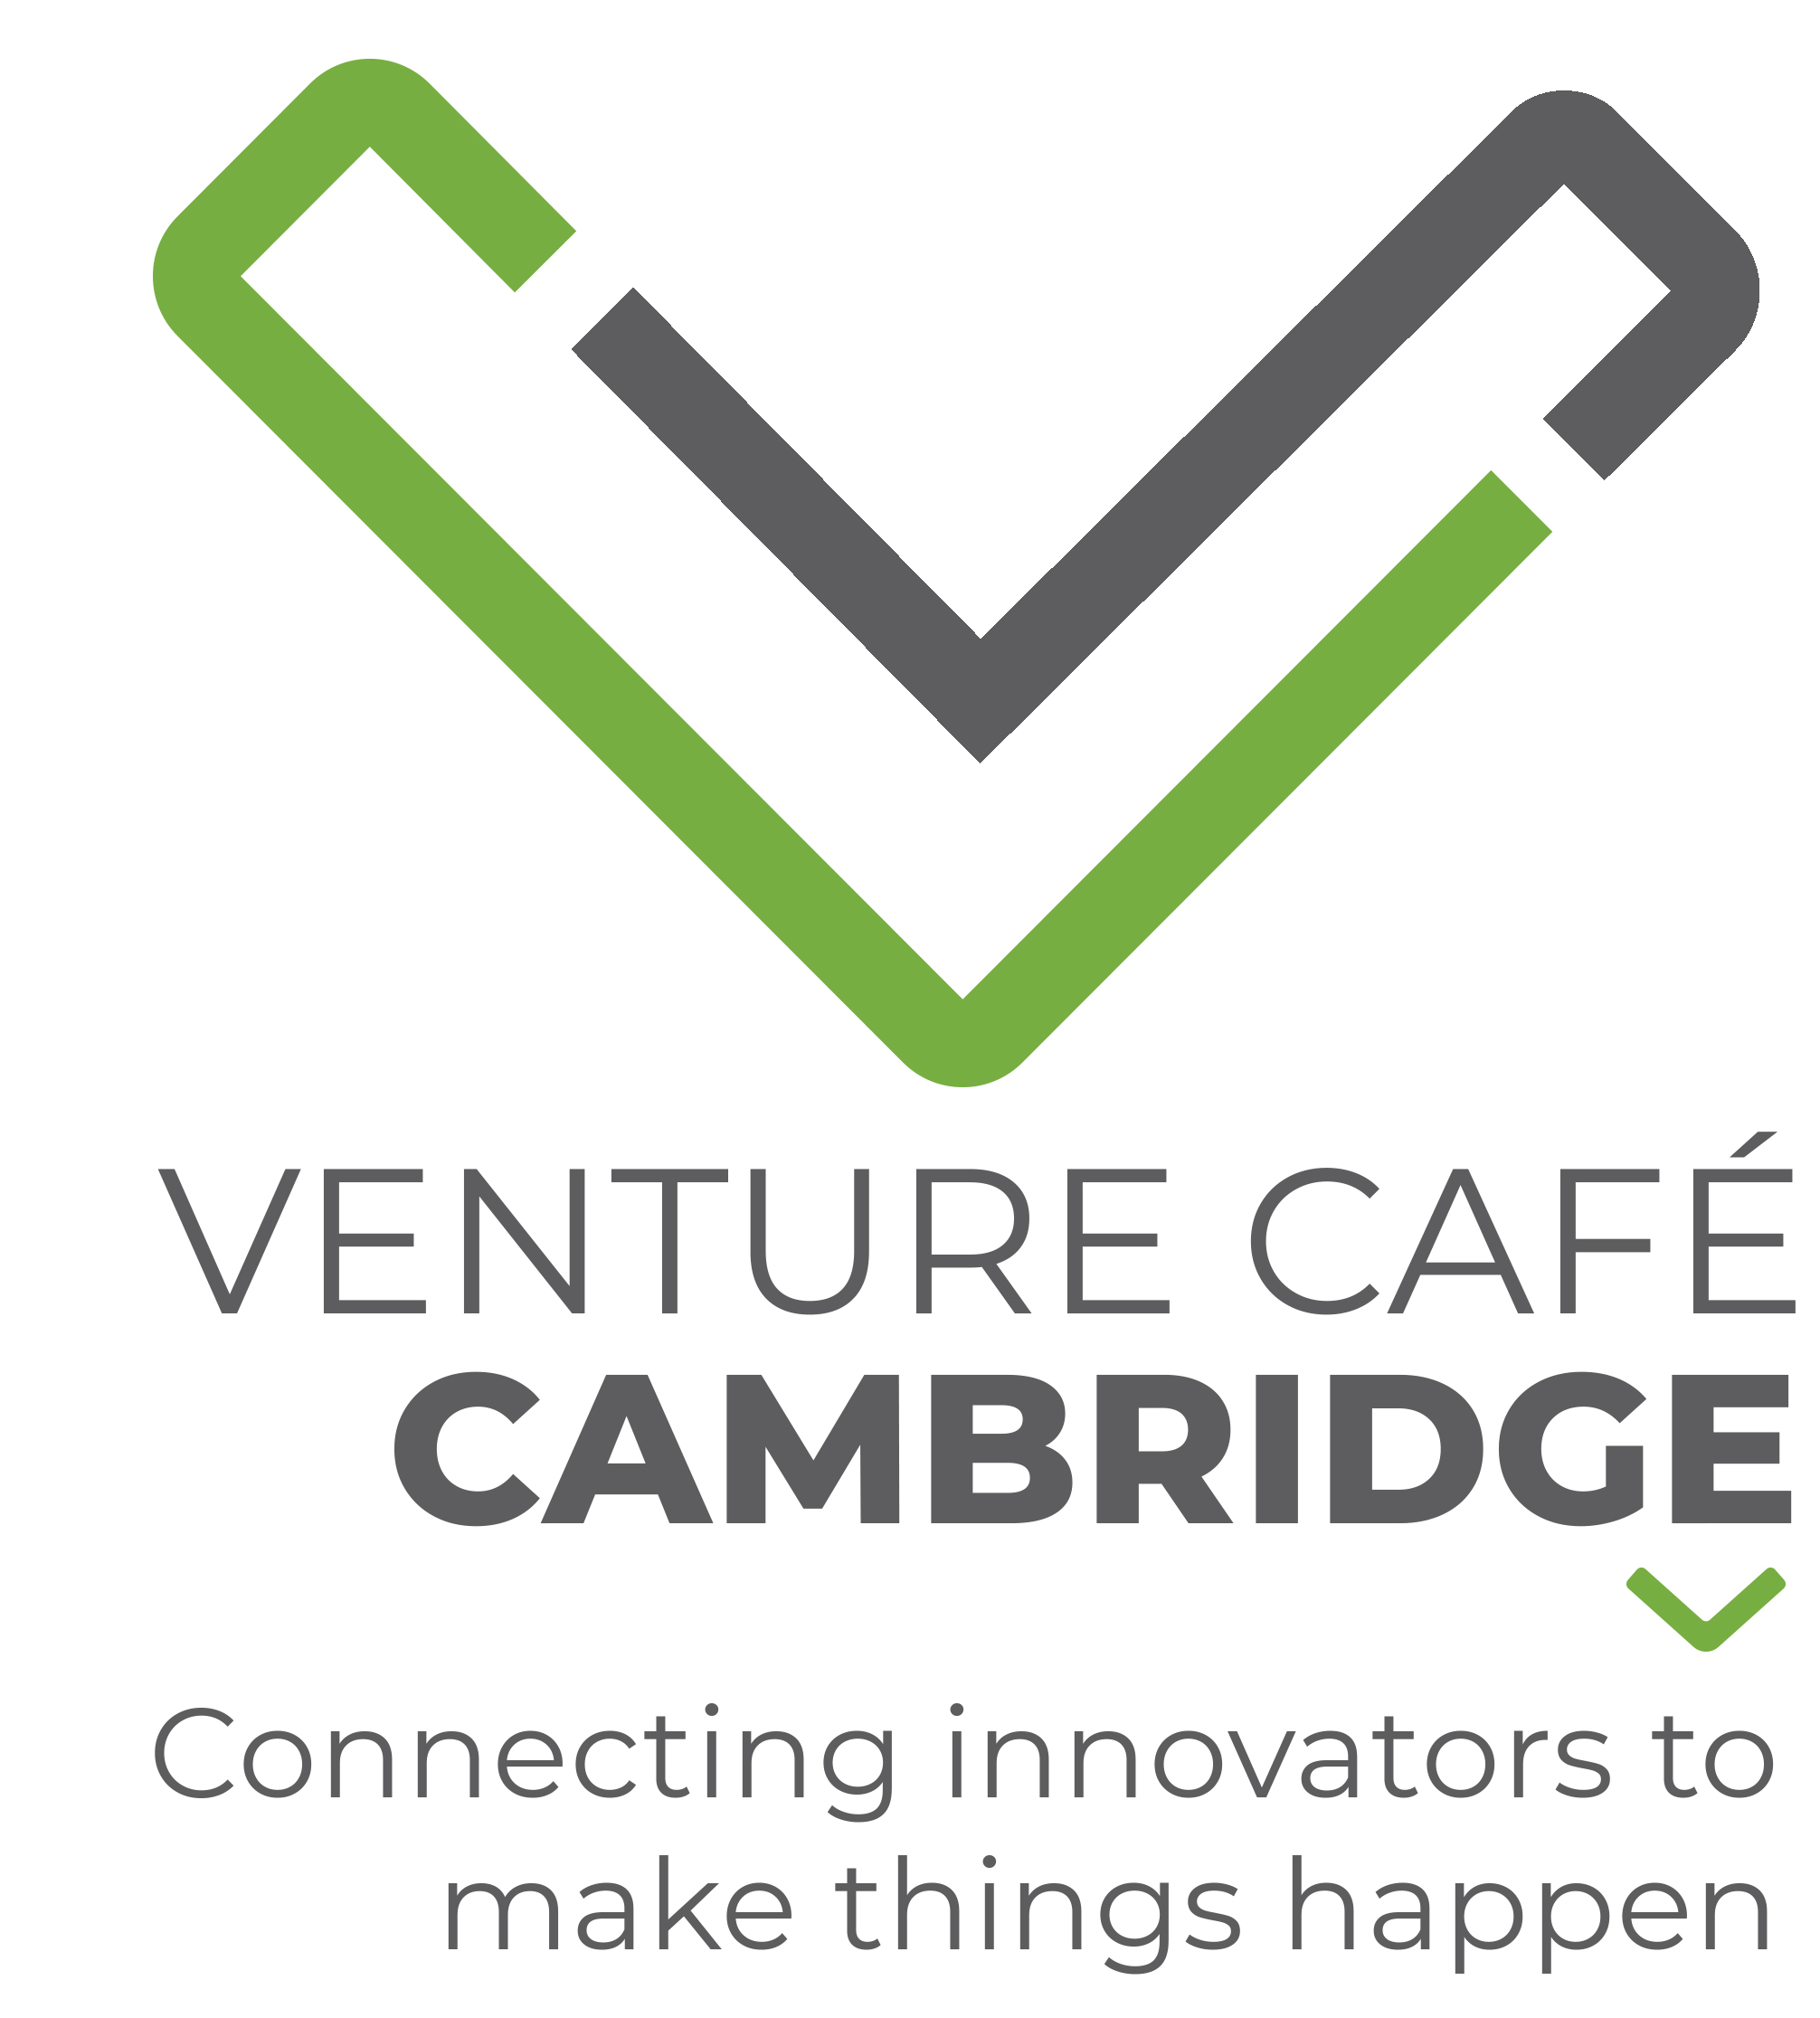 Venture Café Cambridge is the Kendall Square site location of the nonprofit Venture Café Foundation